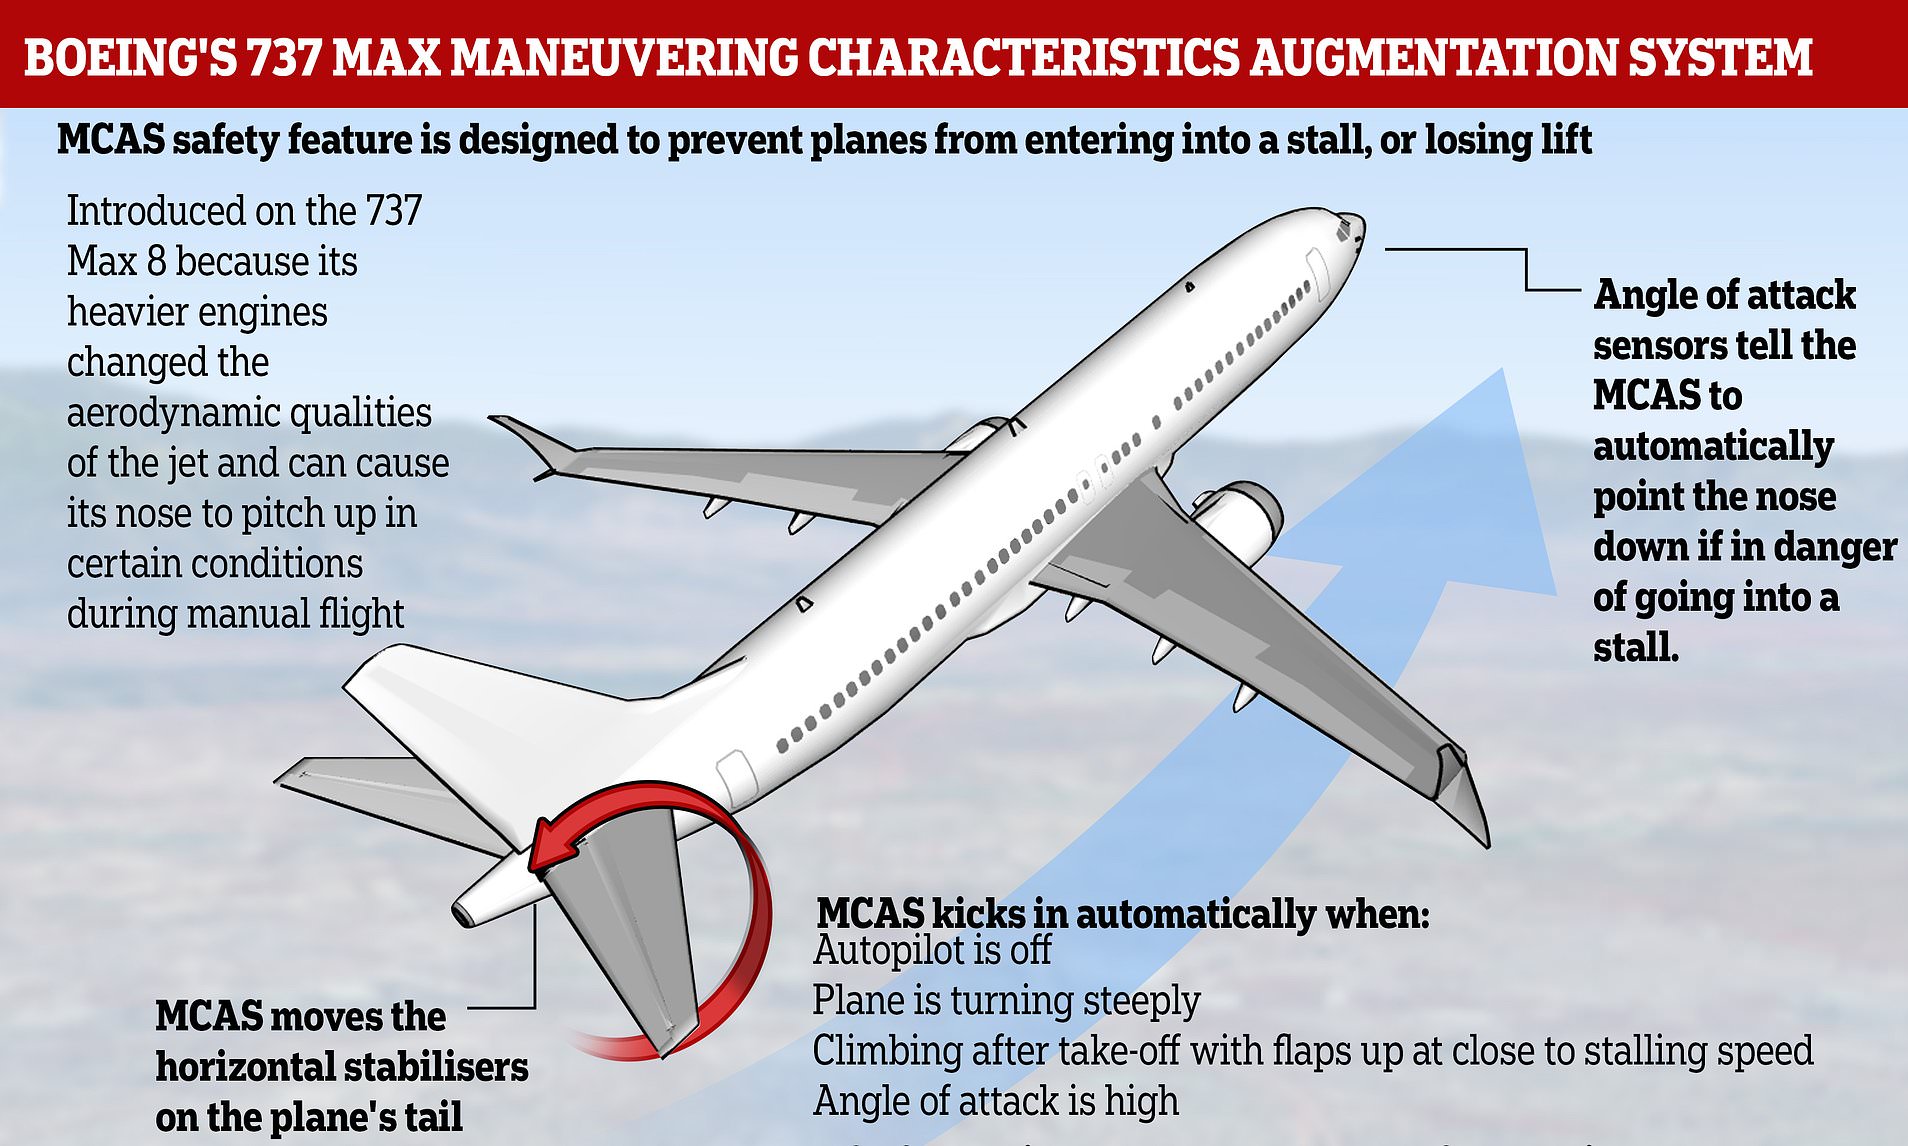 Крушение боинга 737 max 8 в эфиопии: насколько закономерны катастрофы?